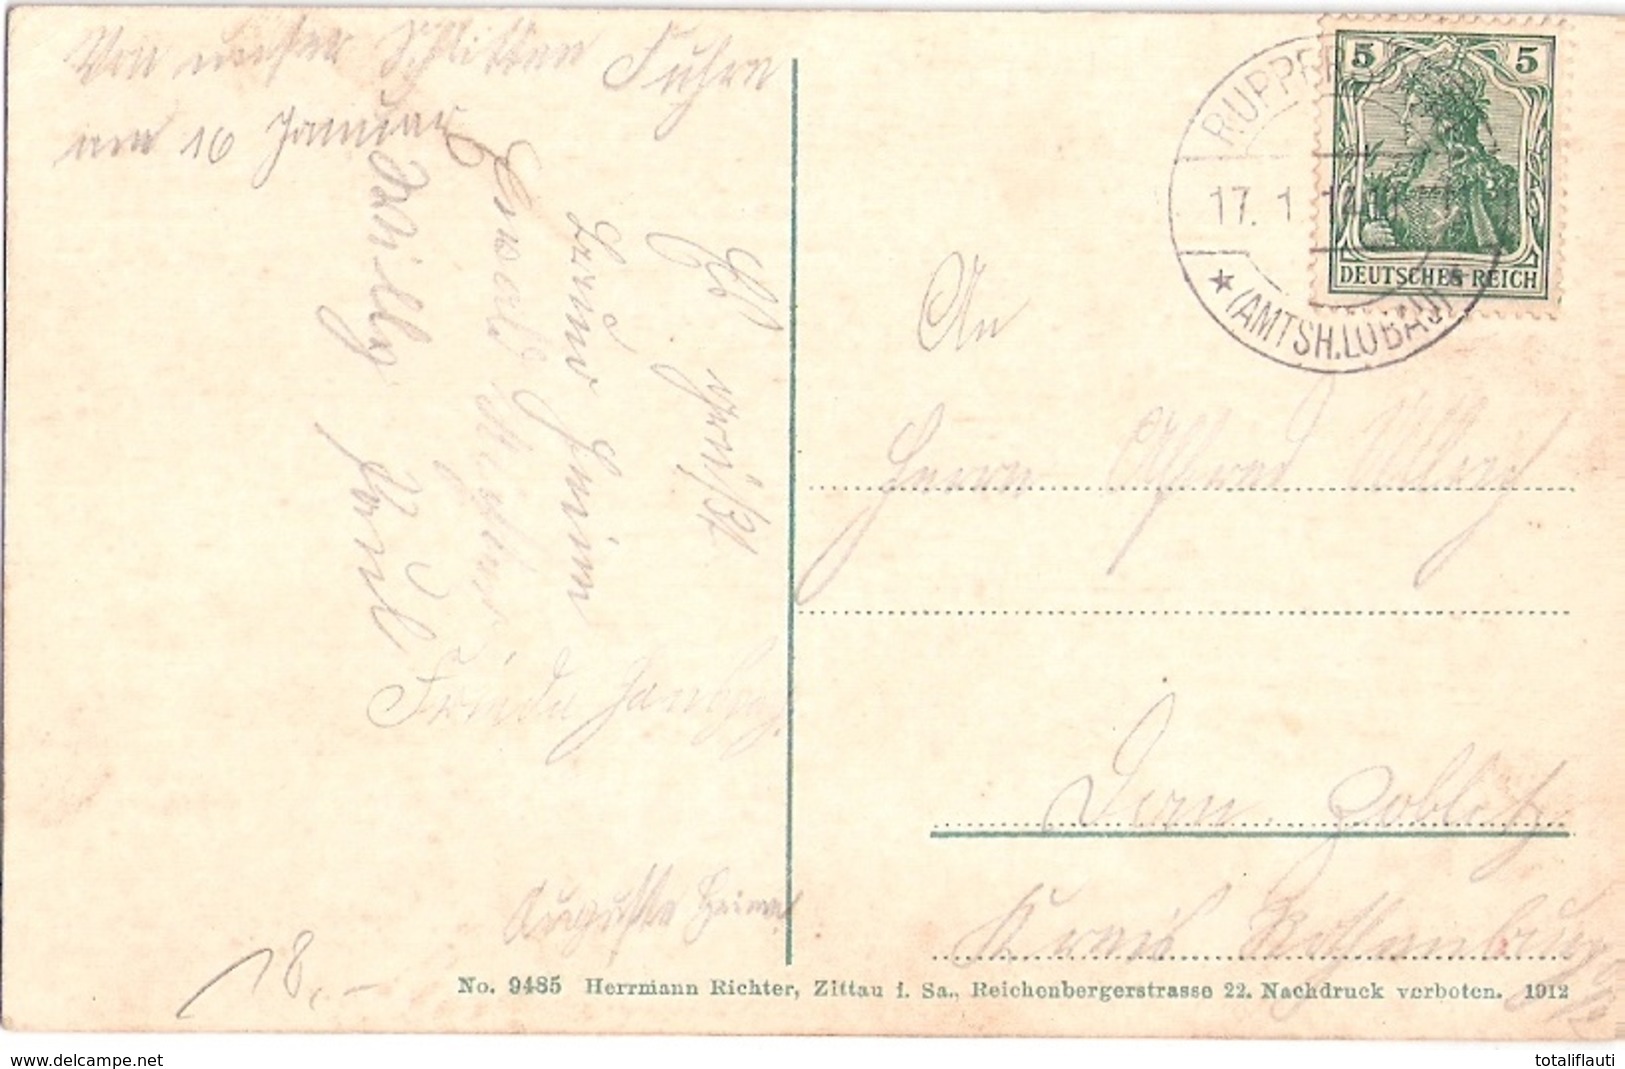 RUPPERSDORF Herrnhut Lausitz Gasthof NINIVE Eisenbahn Dampflok 17.1.1914 Gelaufen - Herrnhut